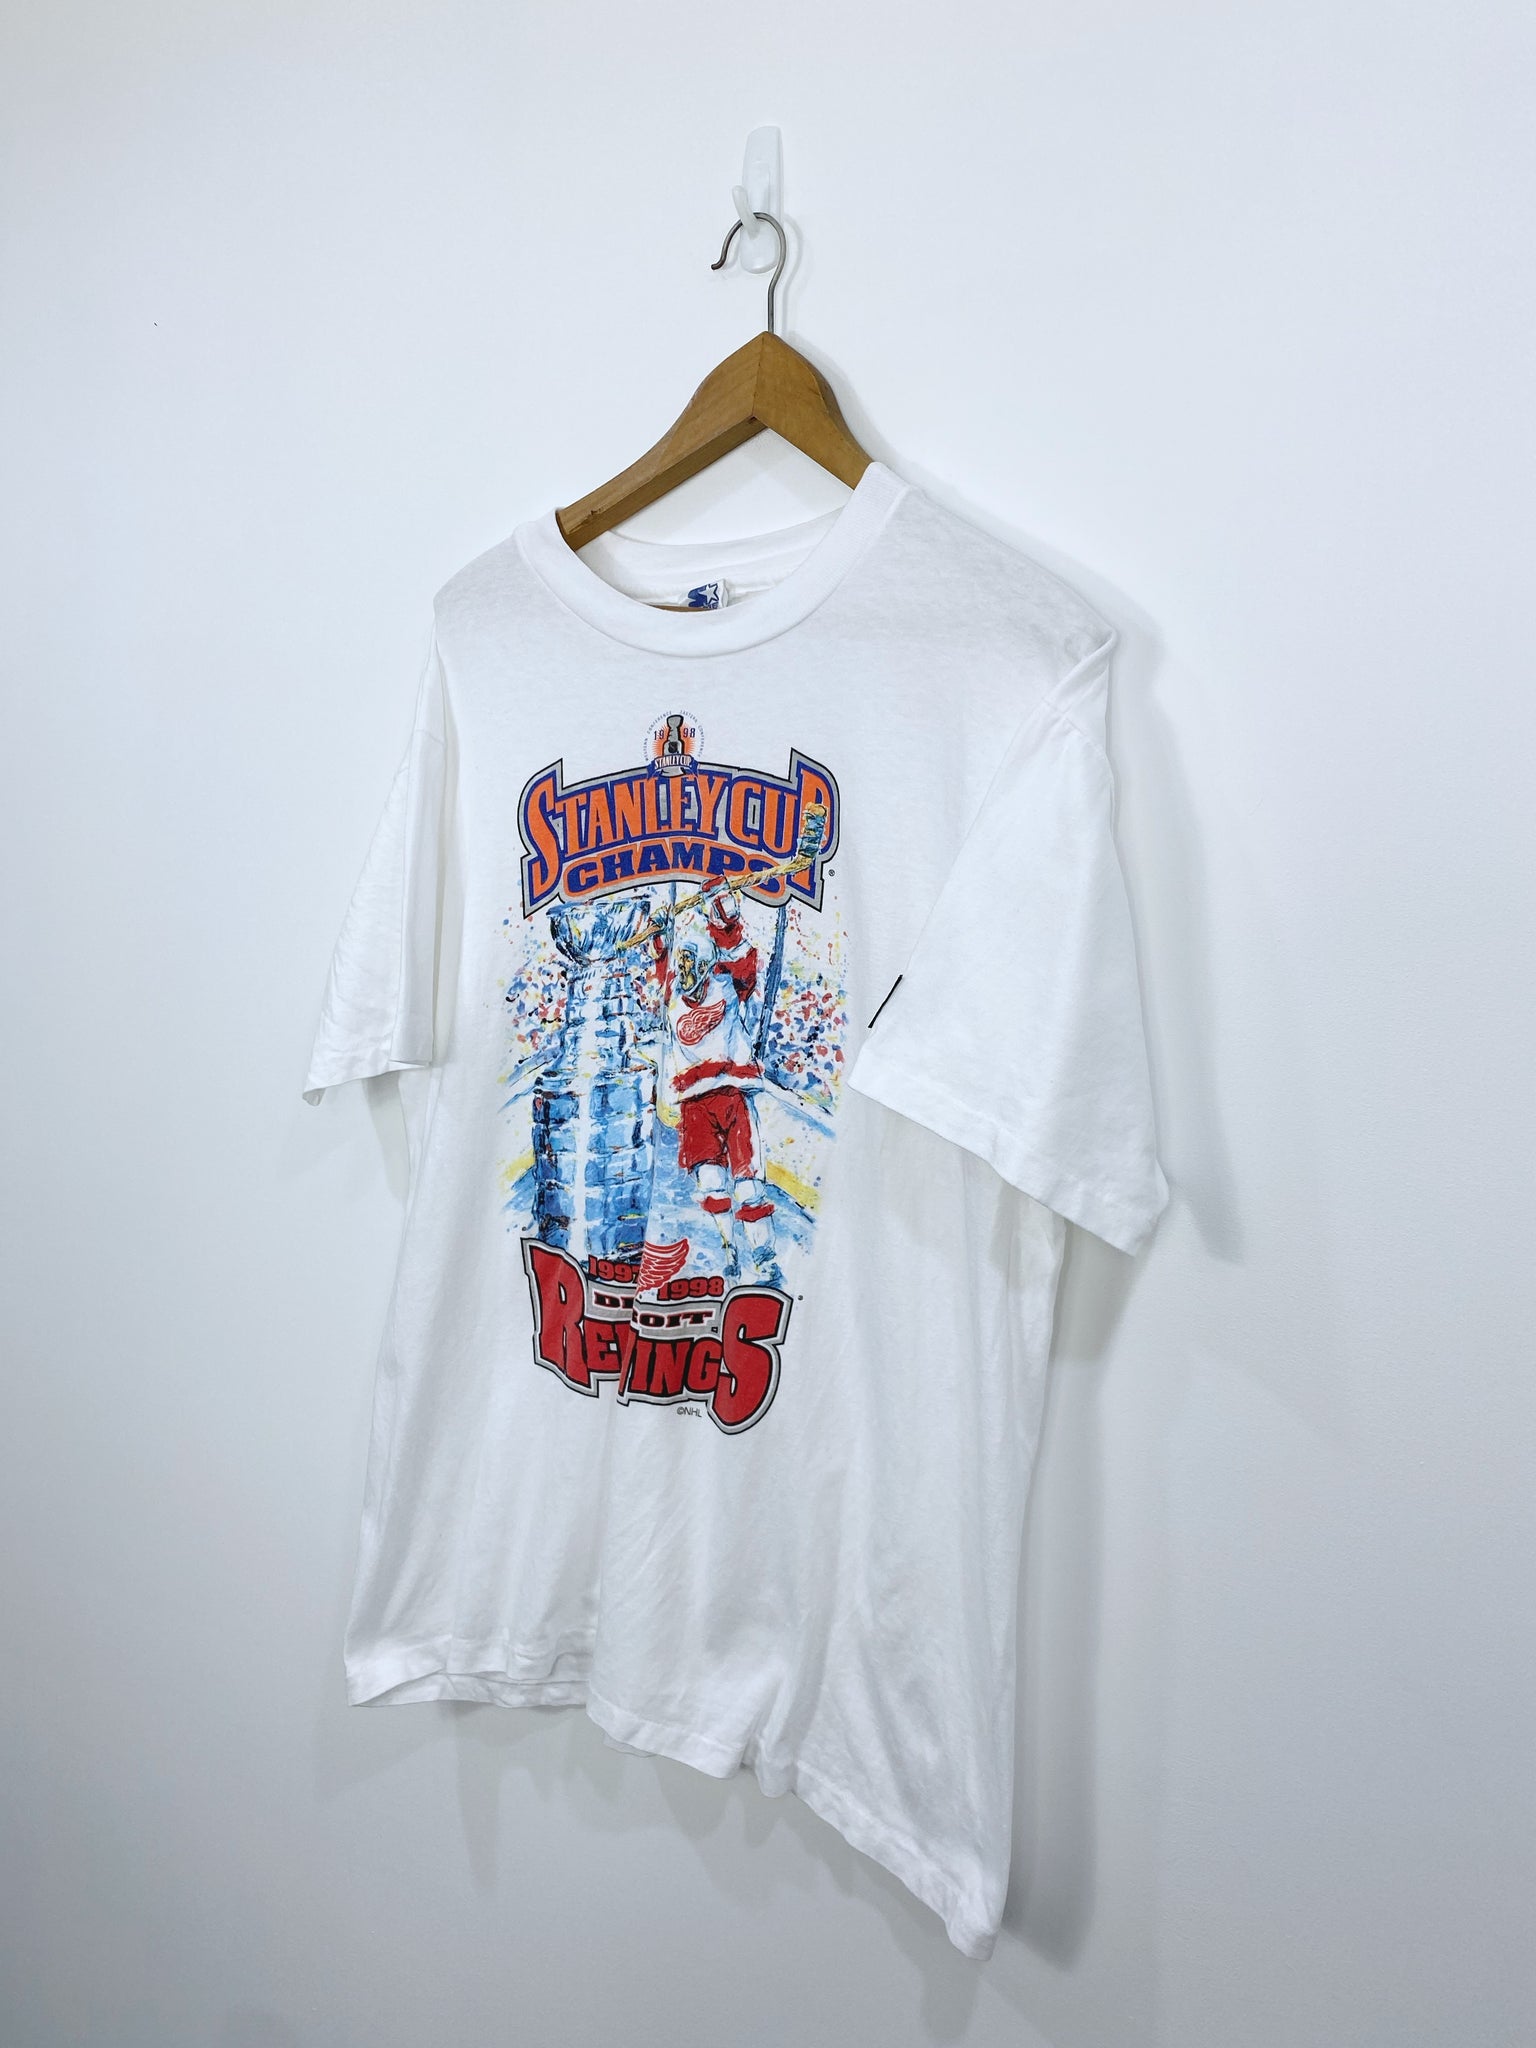 Vintage 1998 Detroit RedWings Championship T-shirt L